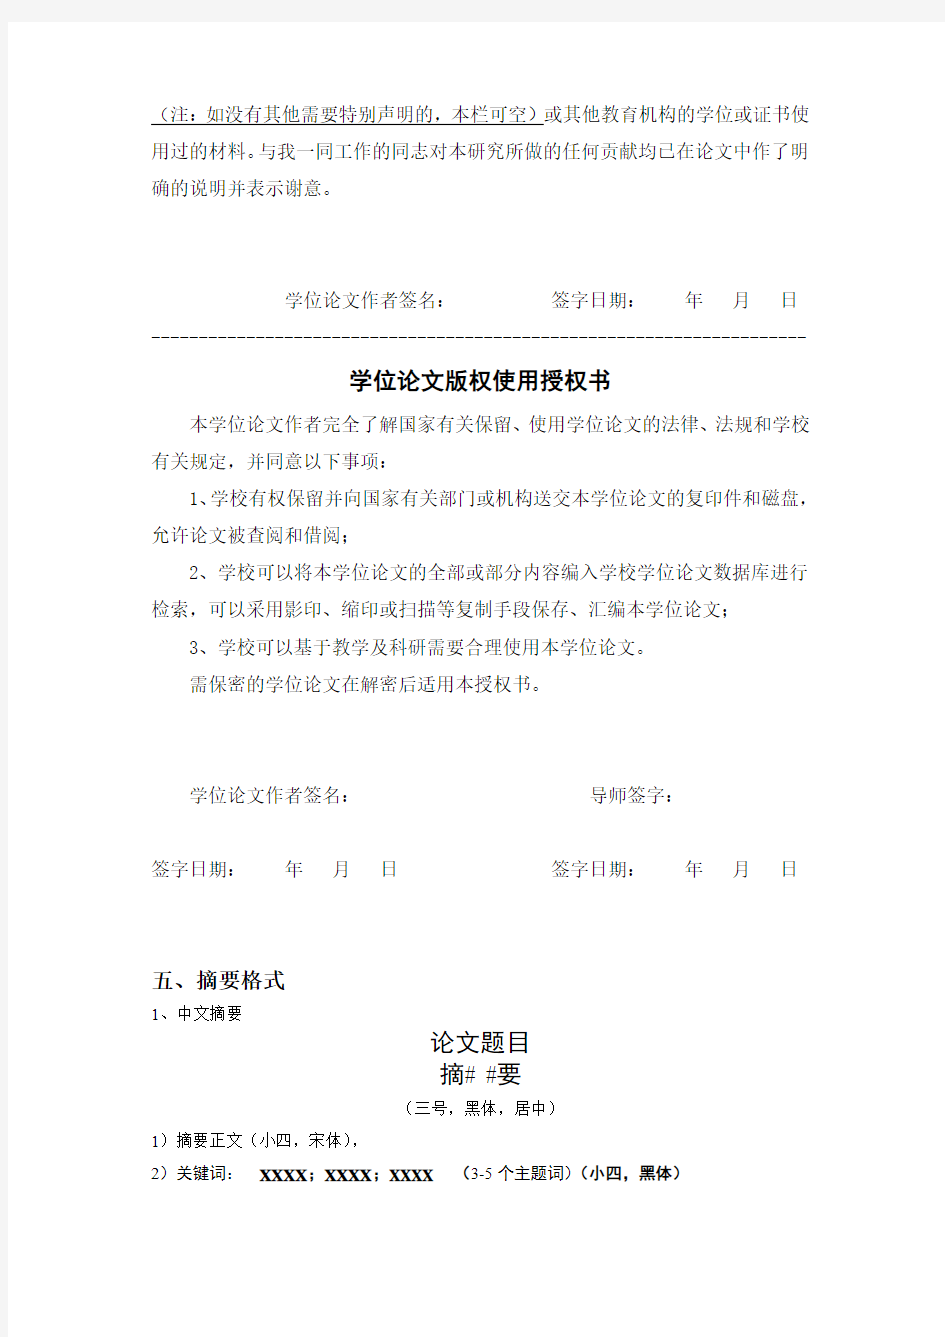 中国海洋大学研究生学位论文书写格式统一要求